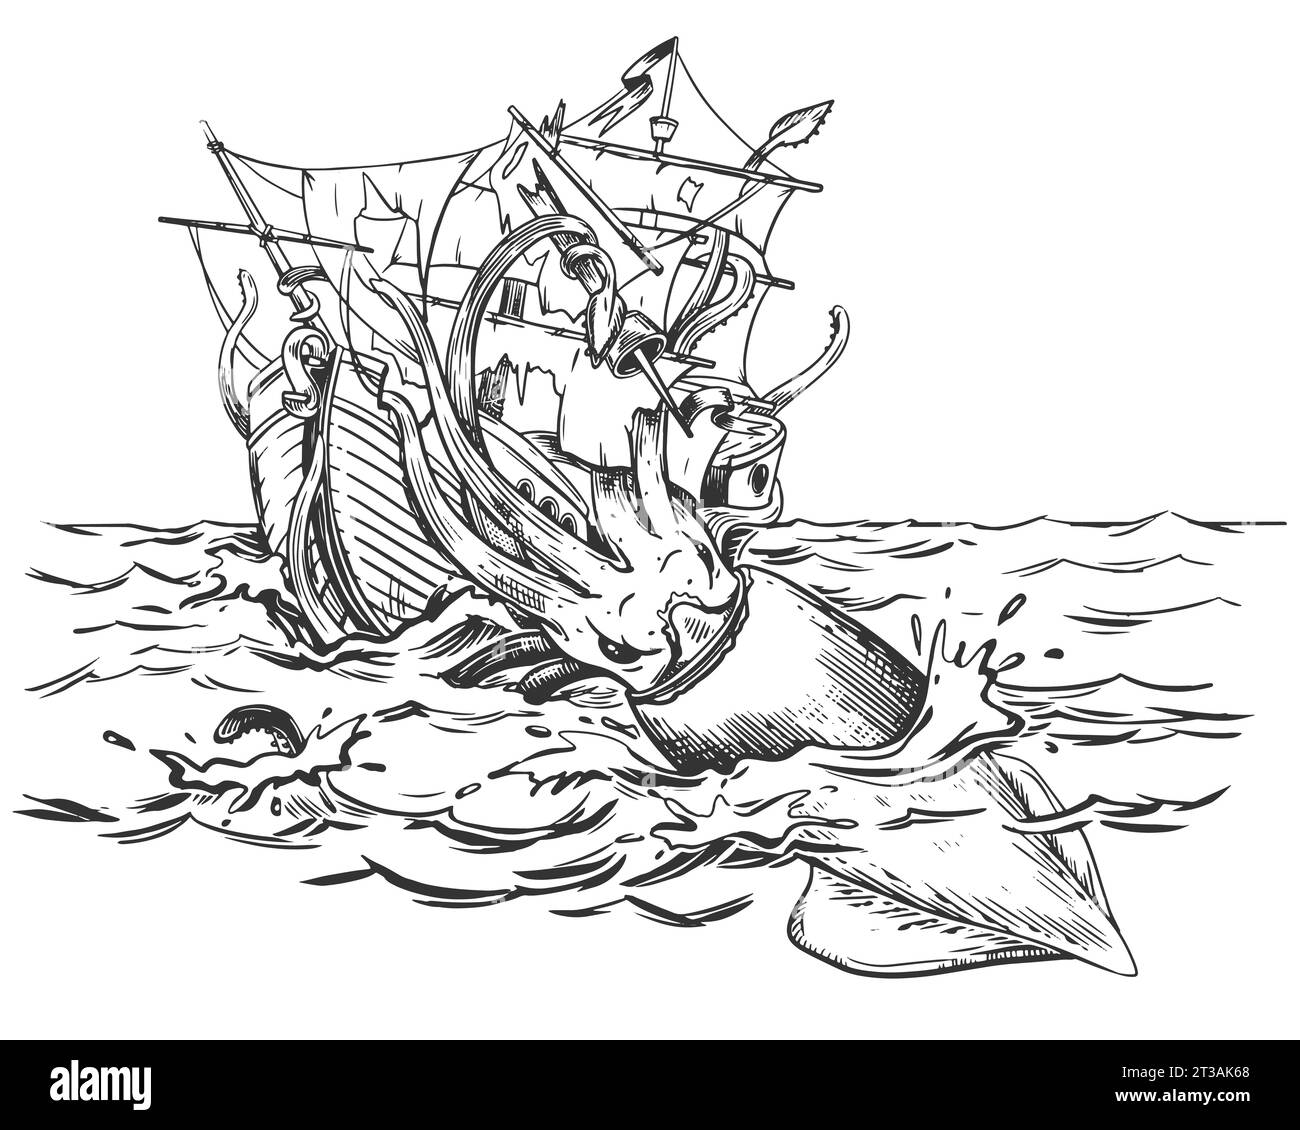 Le légendaire kraken attaque le vaisseau. Un énorme calmar traîne un voilier sous l'eau. Dessin monochrome. Illustration vectorielle dans le style de gravure. Comp Illustration de Vecteur